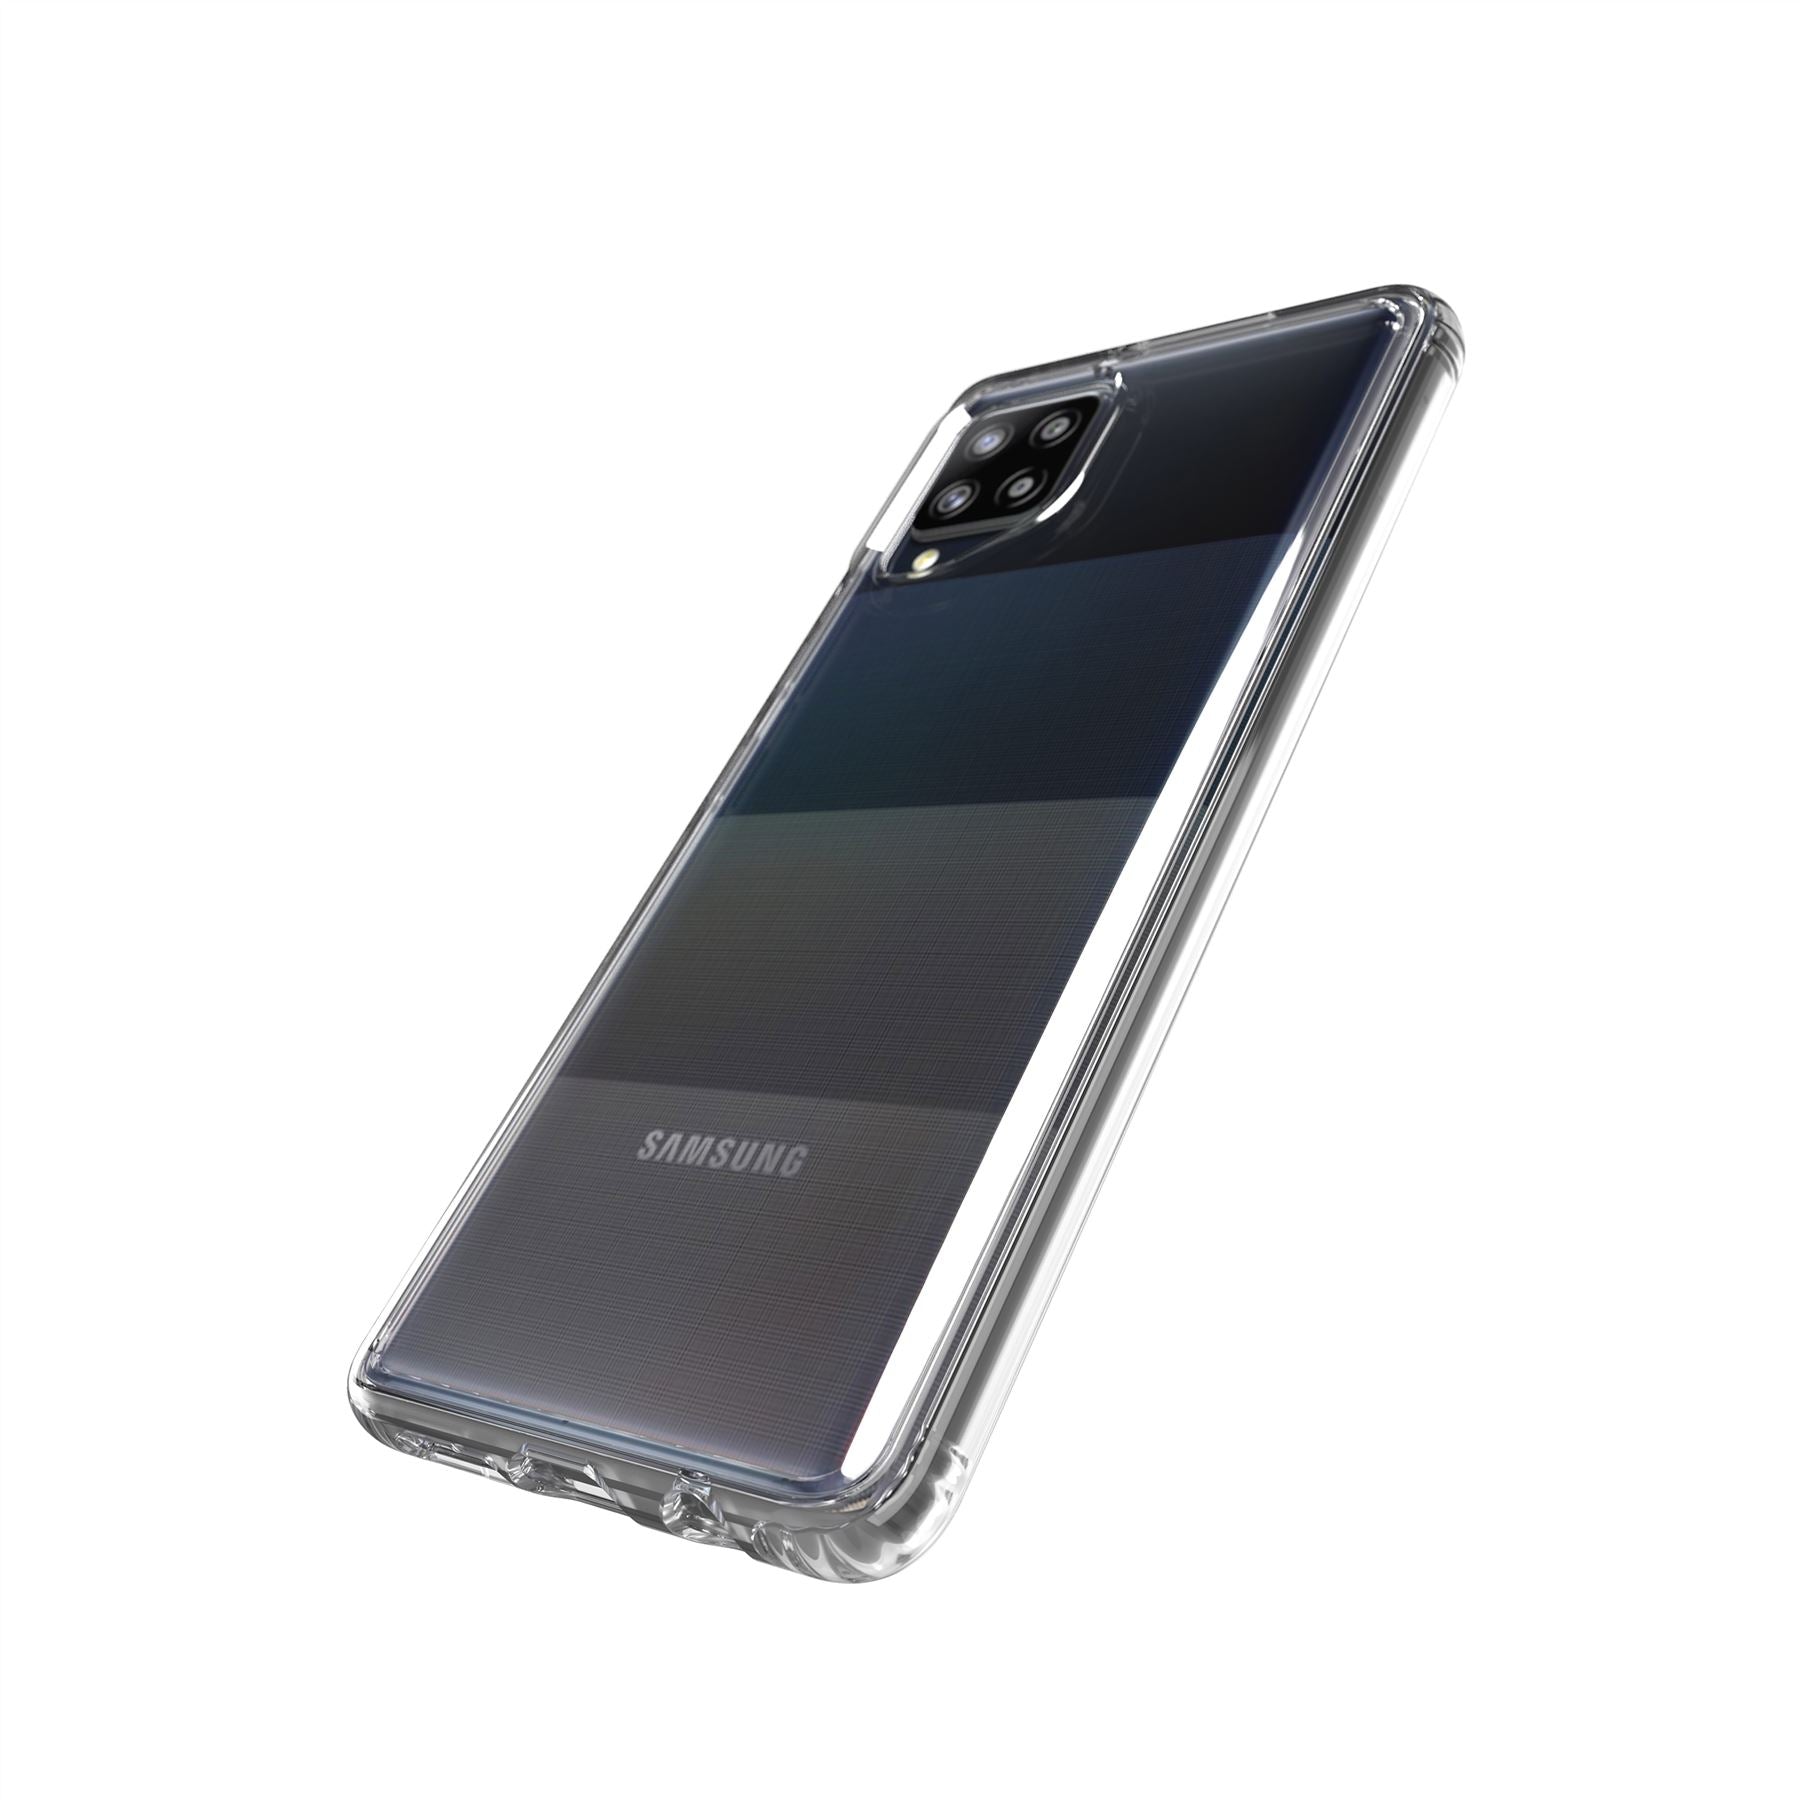 Evo Clear - Samsung Galaxy A42 5G Case - Clear